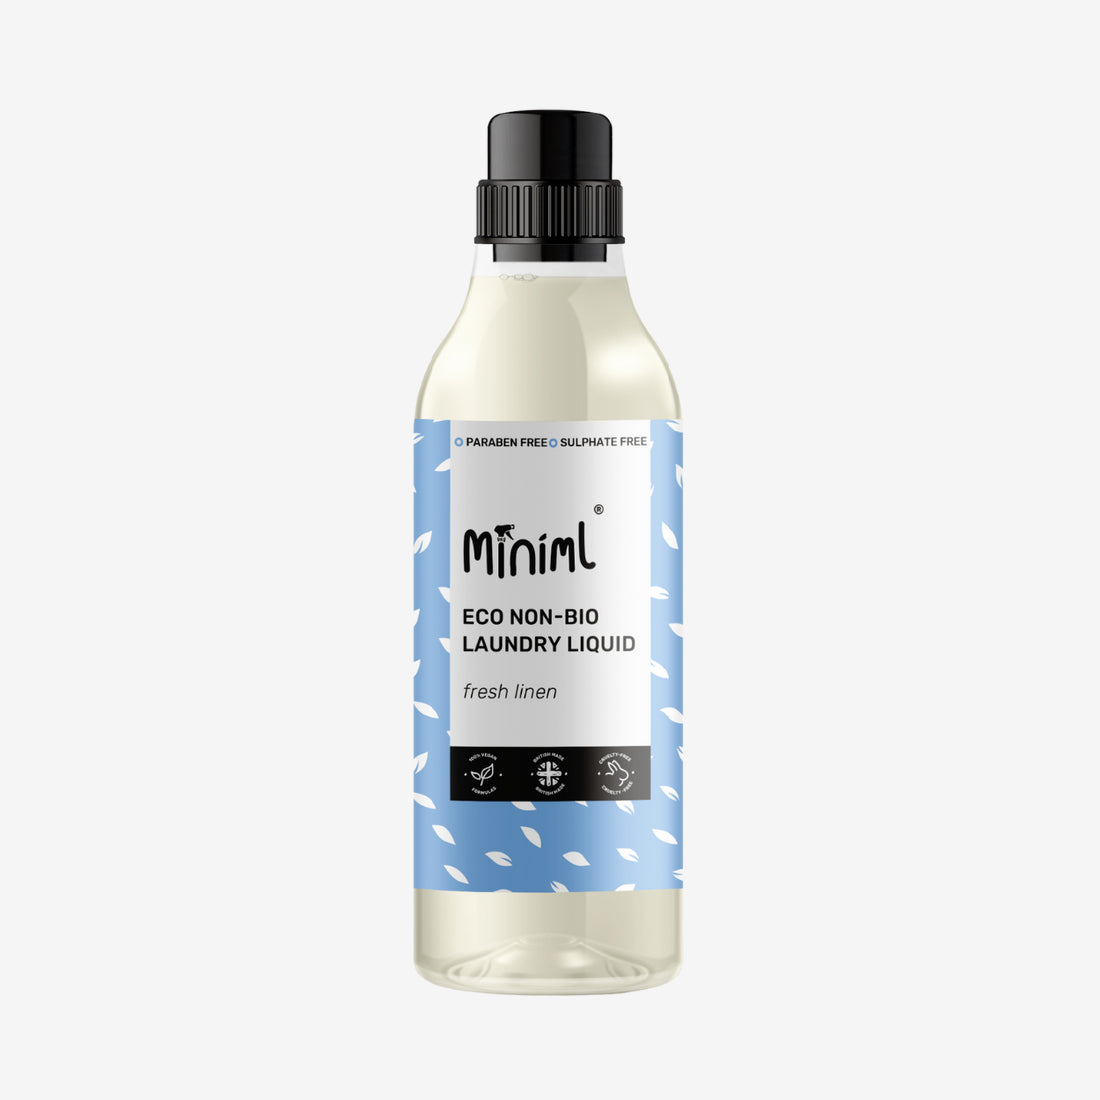 Miniml Eco Non-Bio Laundry Liquid Detergent